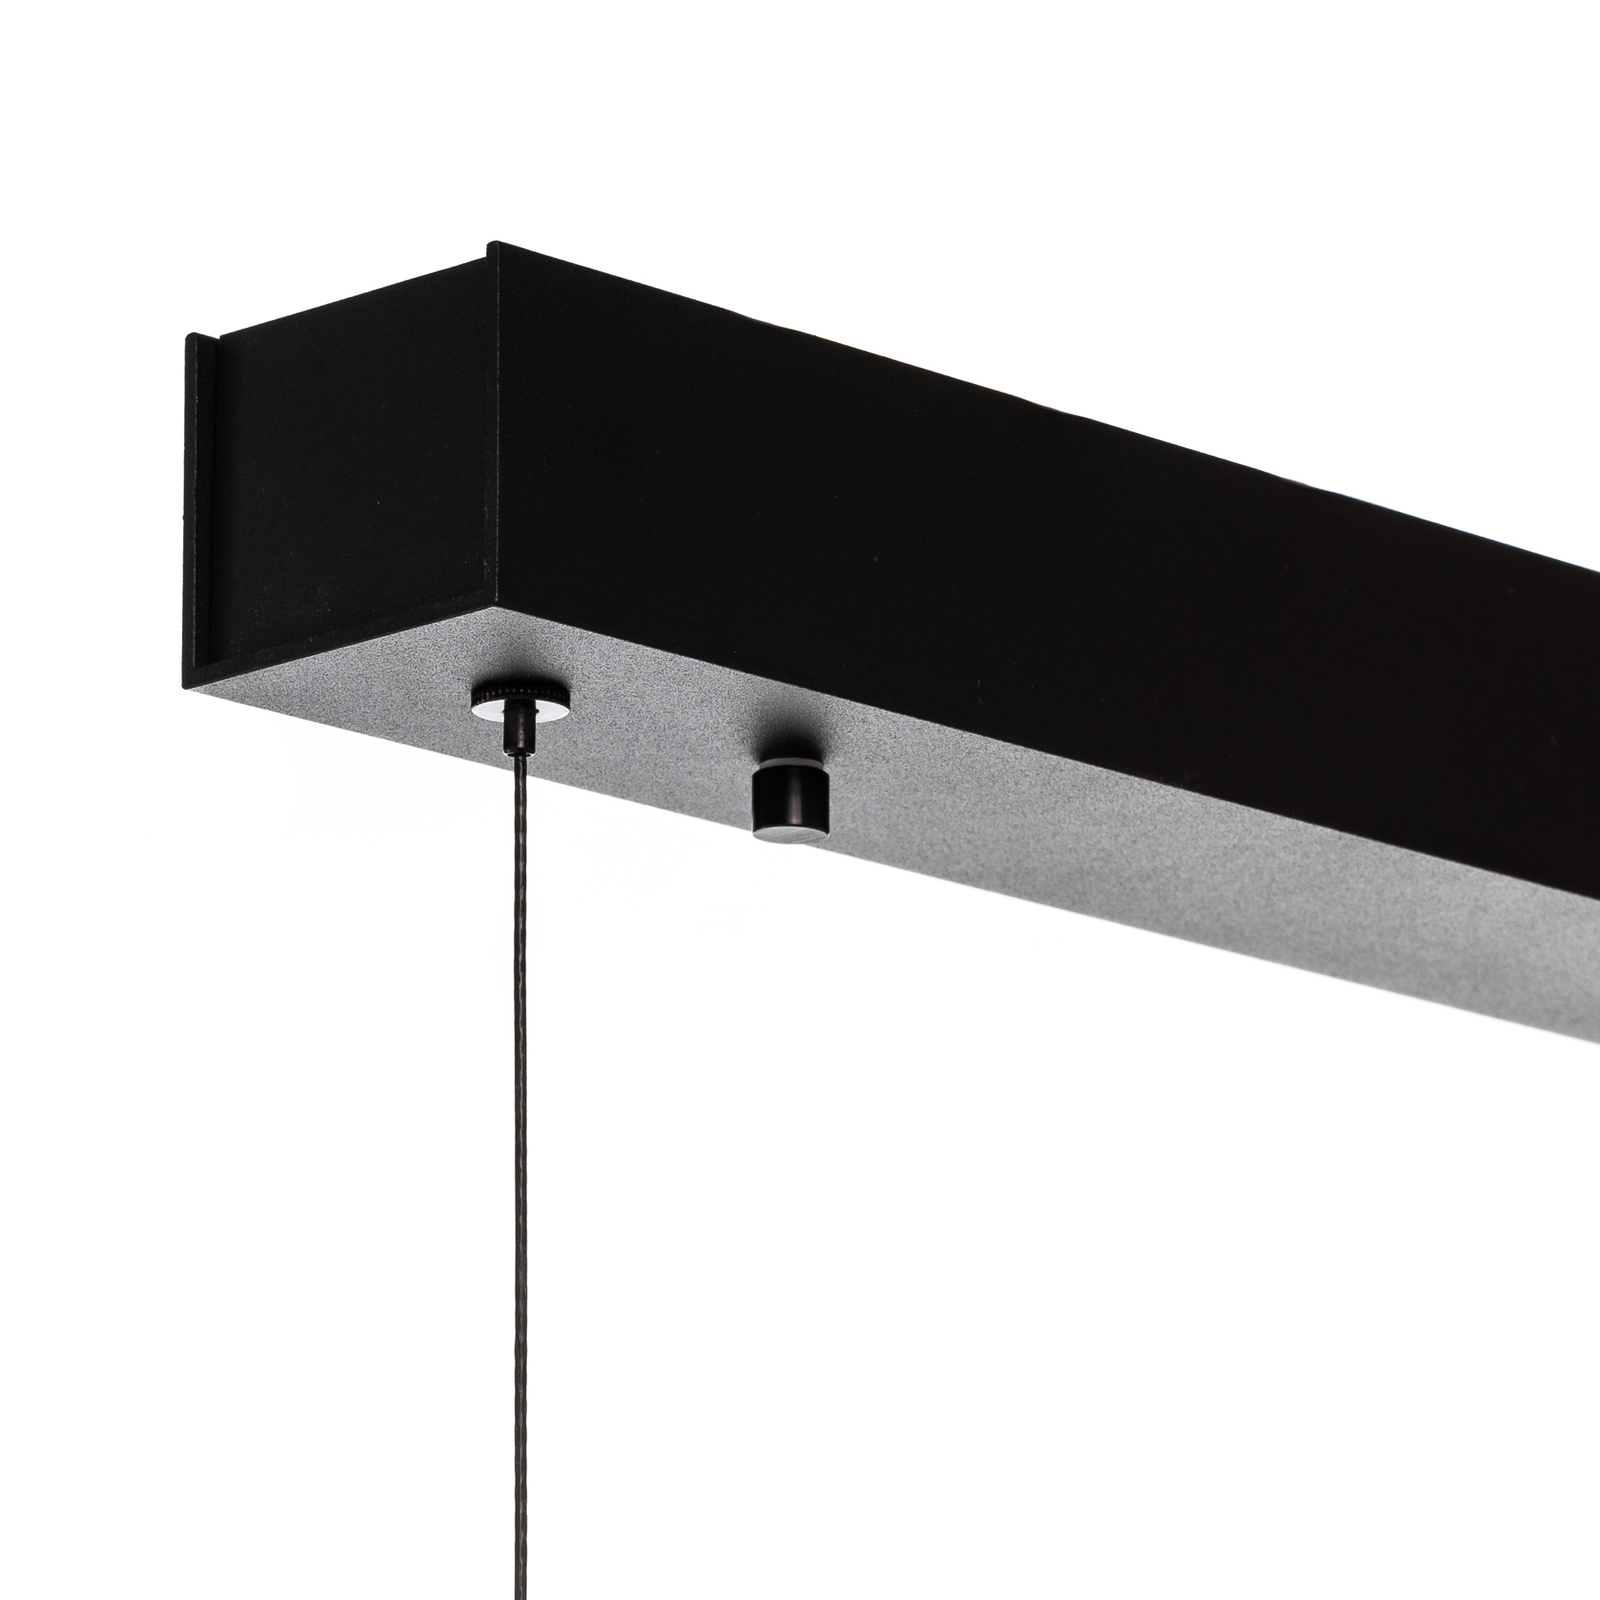 Quitani LED hanging light Kiere, oak/black, 118 cm